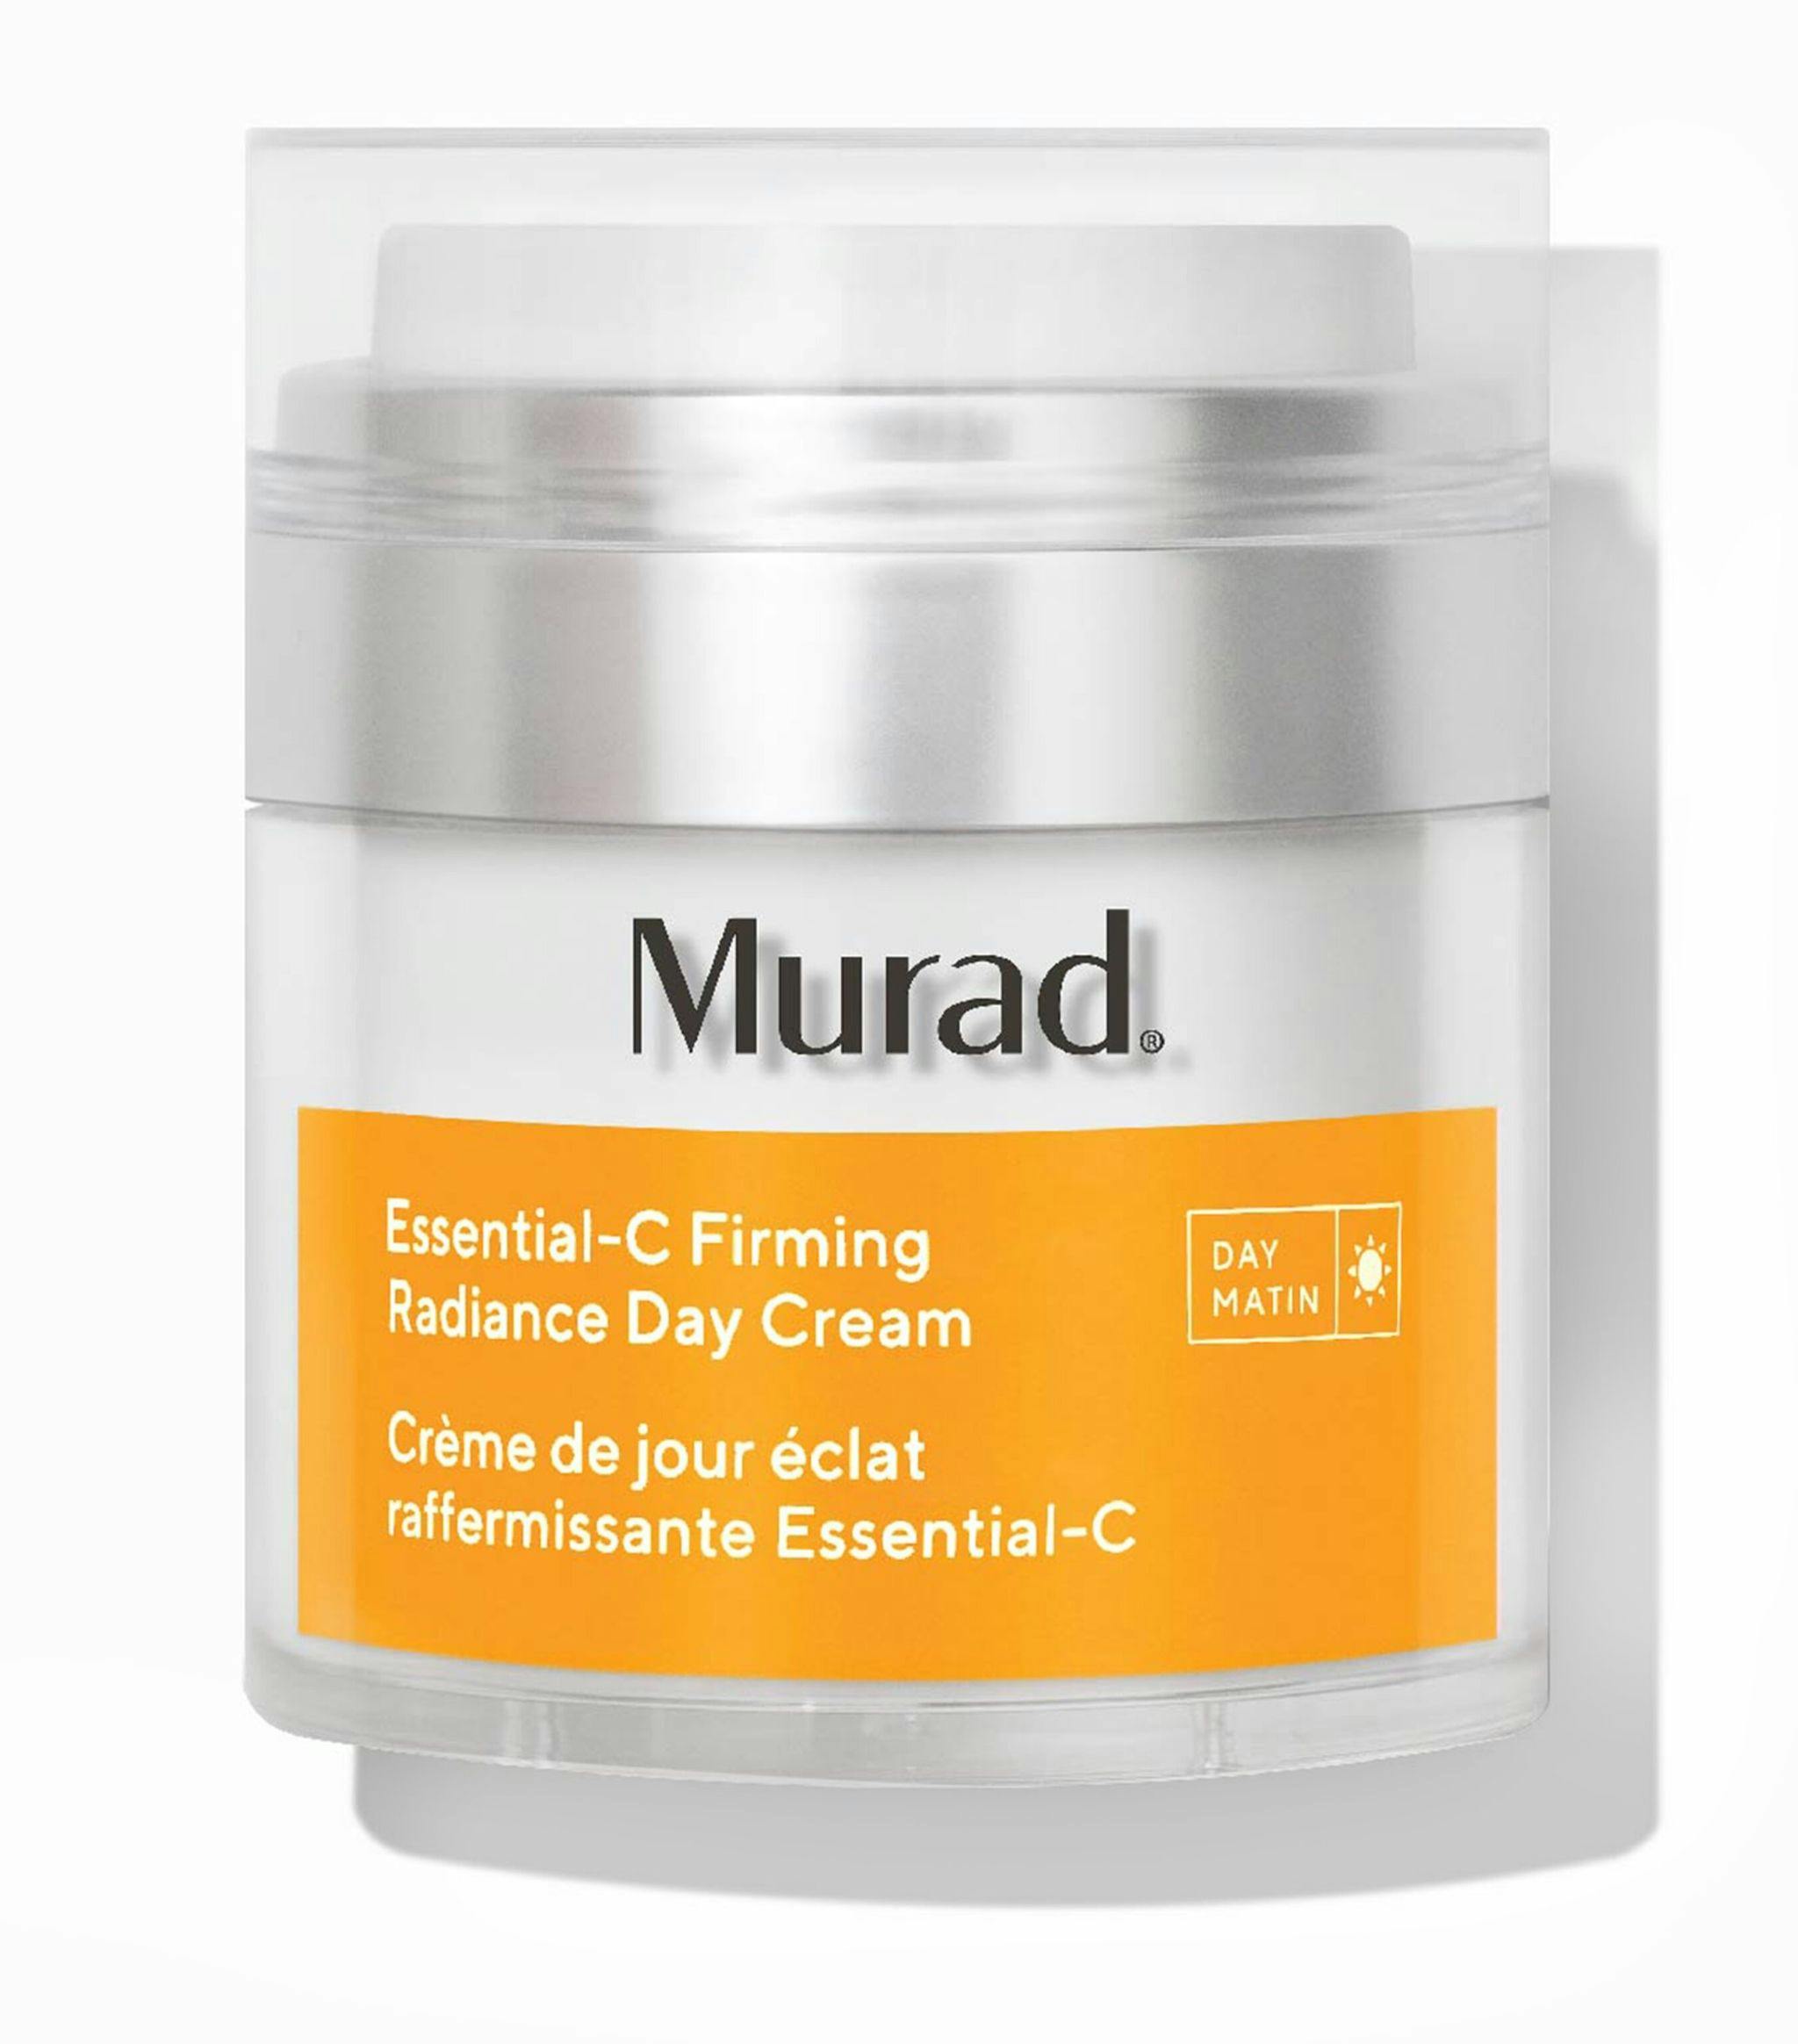 Murad Essential-C Firming Radiance Day Cream Зміцнювальний денний крем для сяяння шкіри